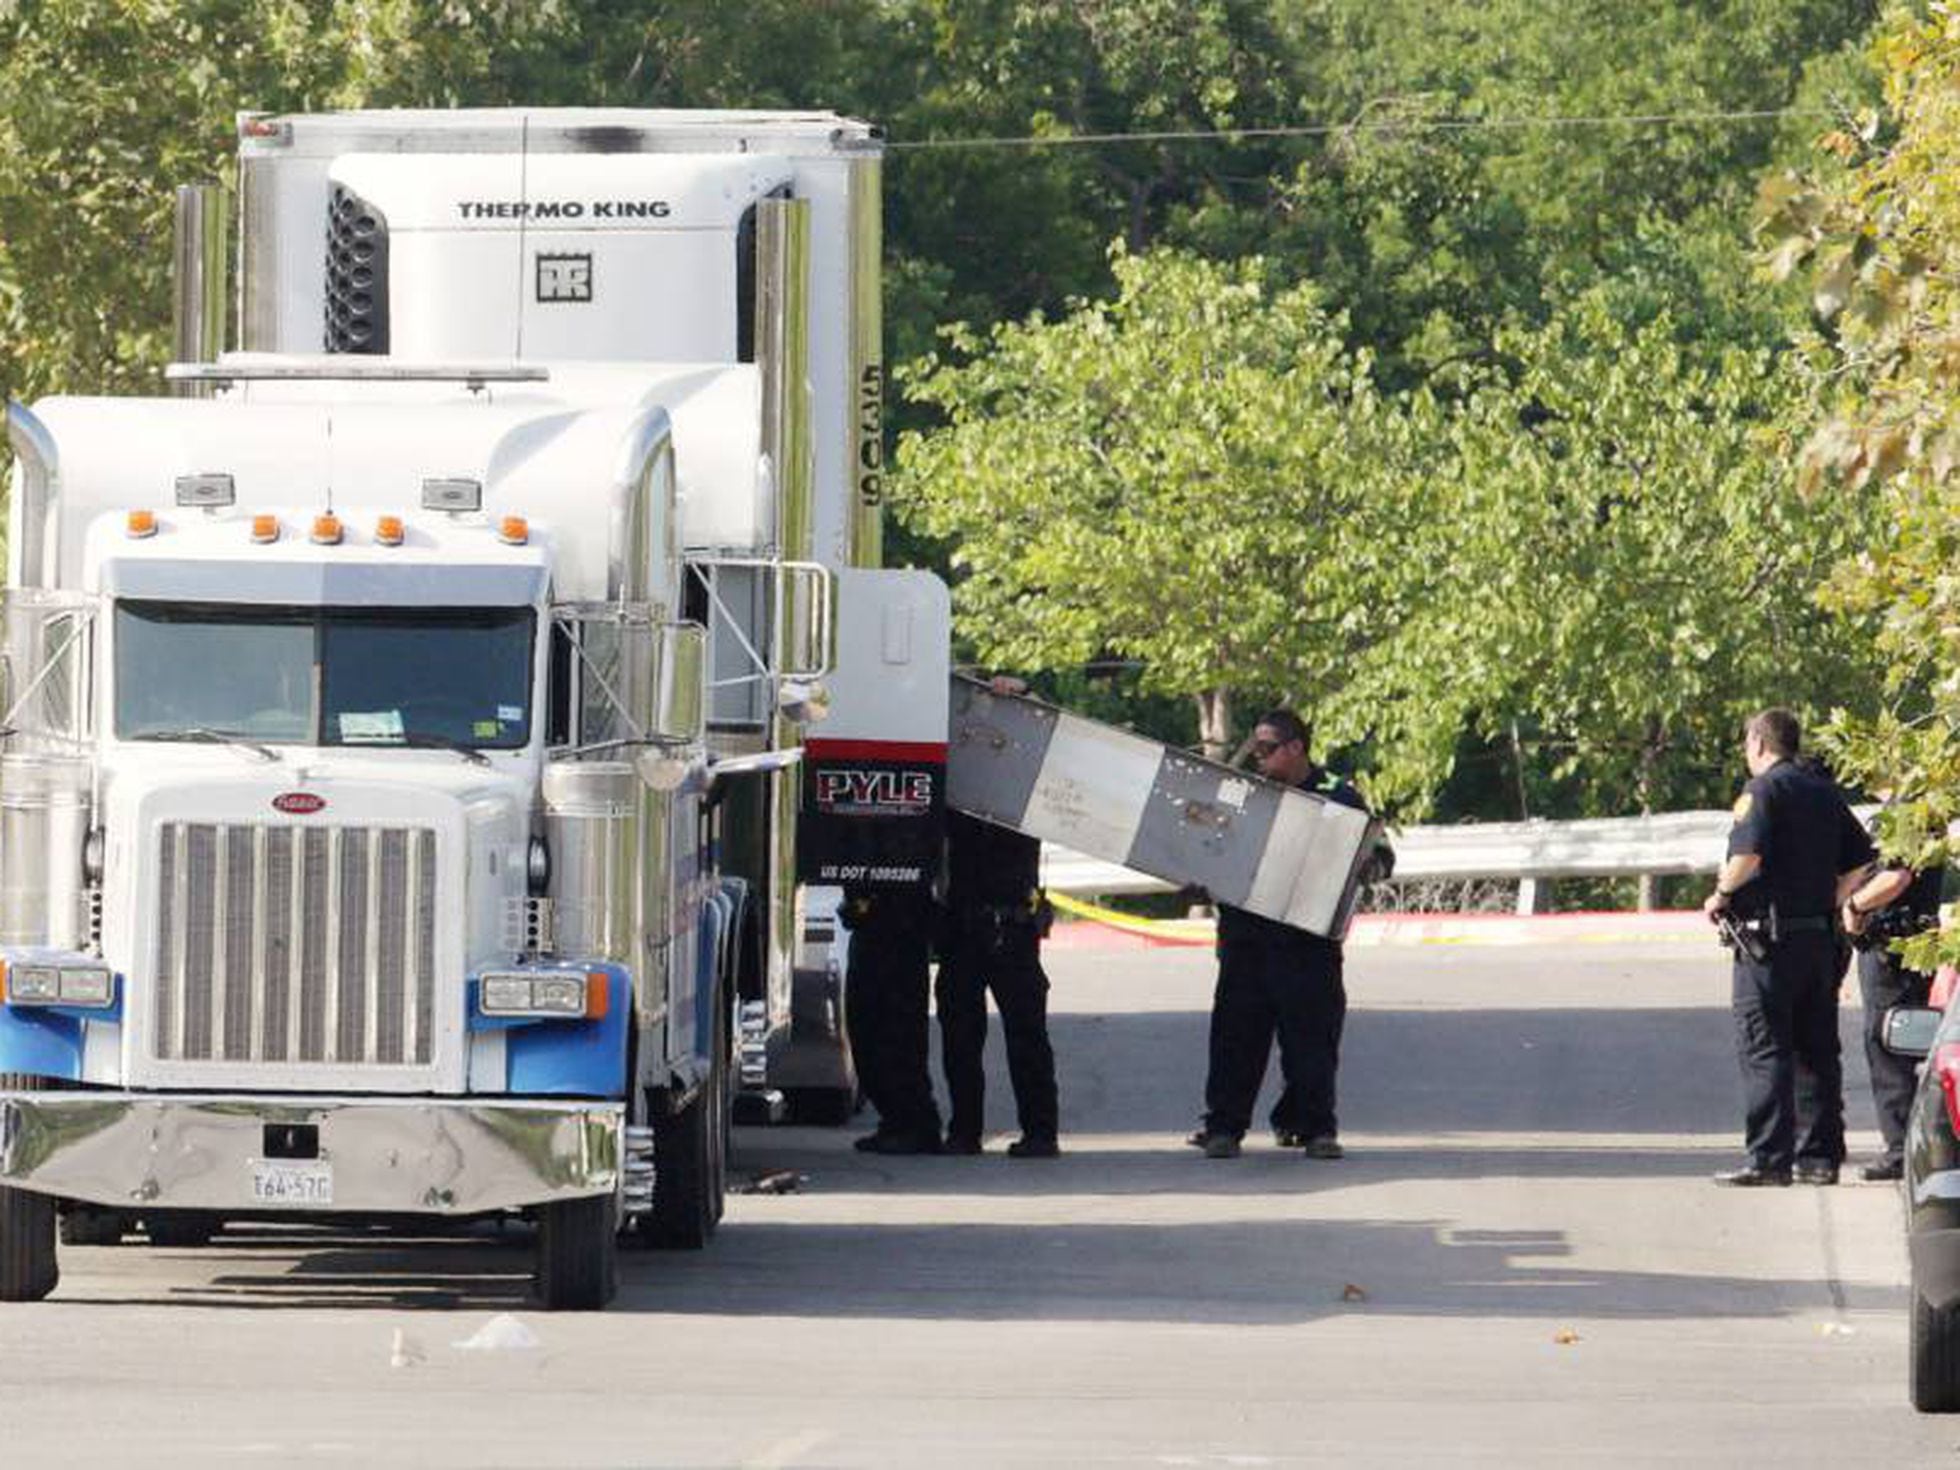 50 migrantes morrem dentro de caminhão nos EUA 